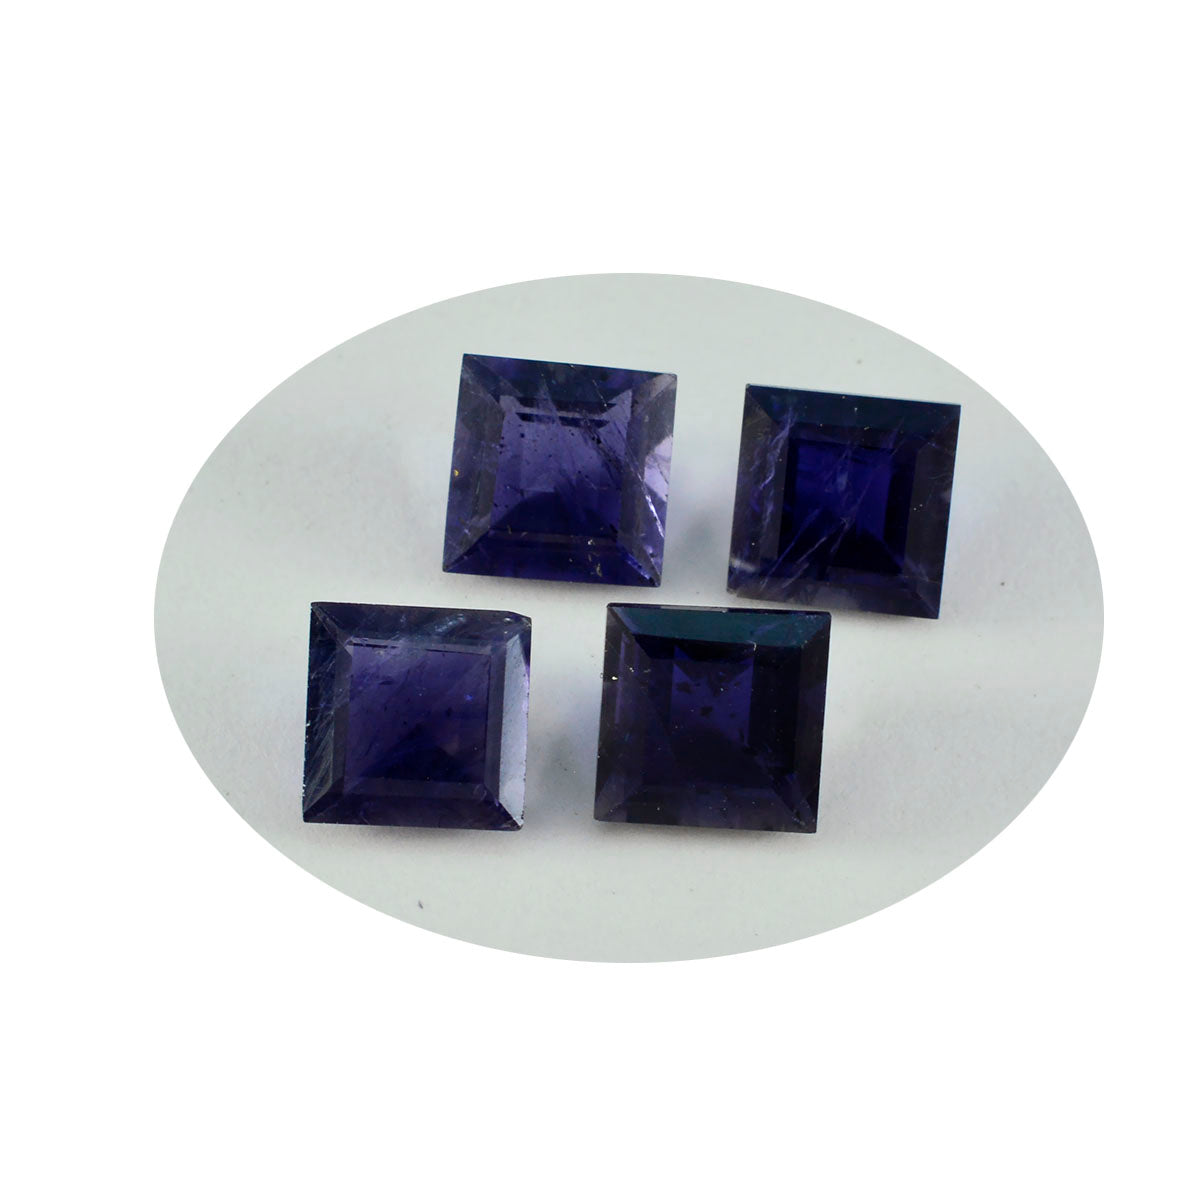 Riyogems 1 Stück blauer Iolith, facettiert, 15 x 15 mm, quadratische Form, schöner Qualitätsedelstein